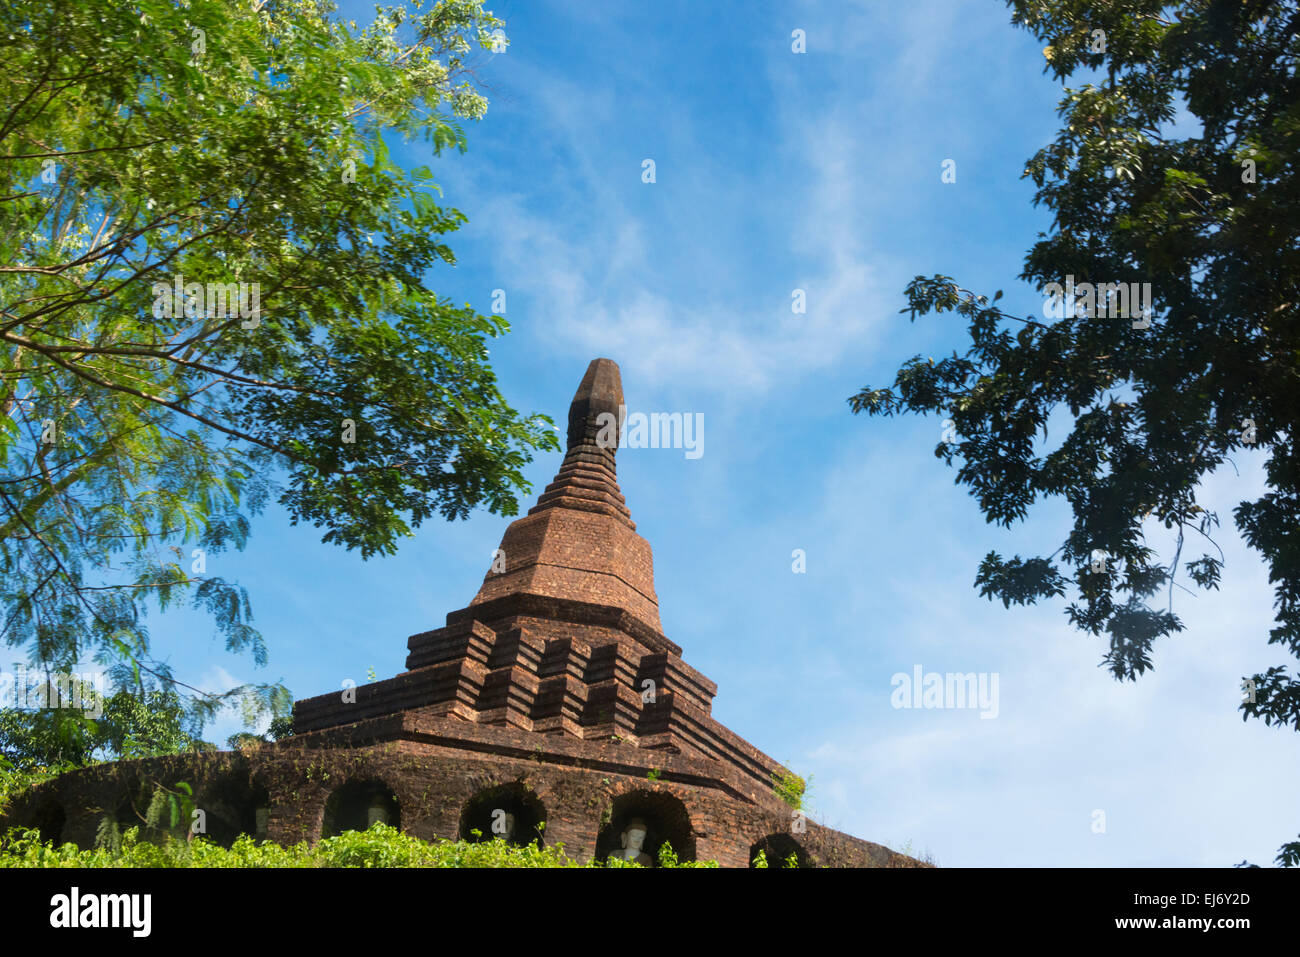 Pagoda, Mrauk-U, Rakhine State, Myanmar Stock Photo